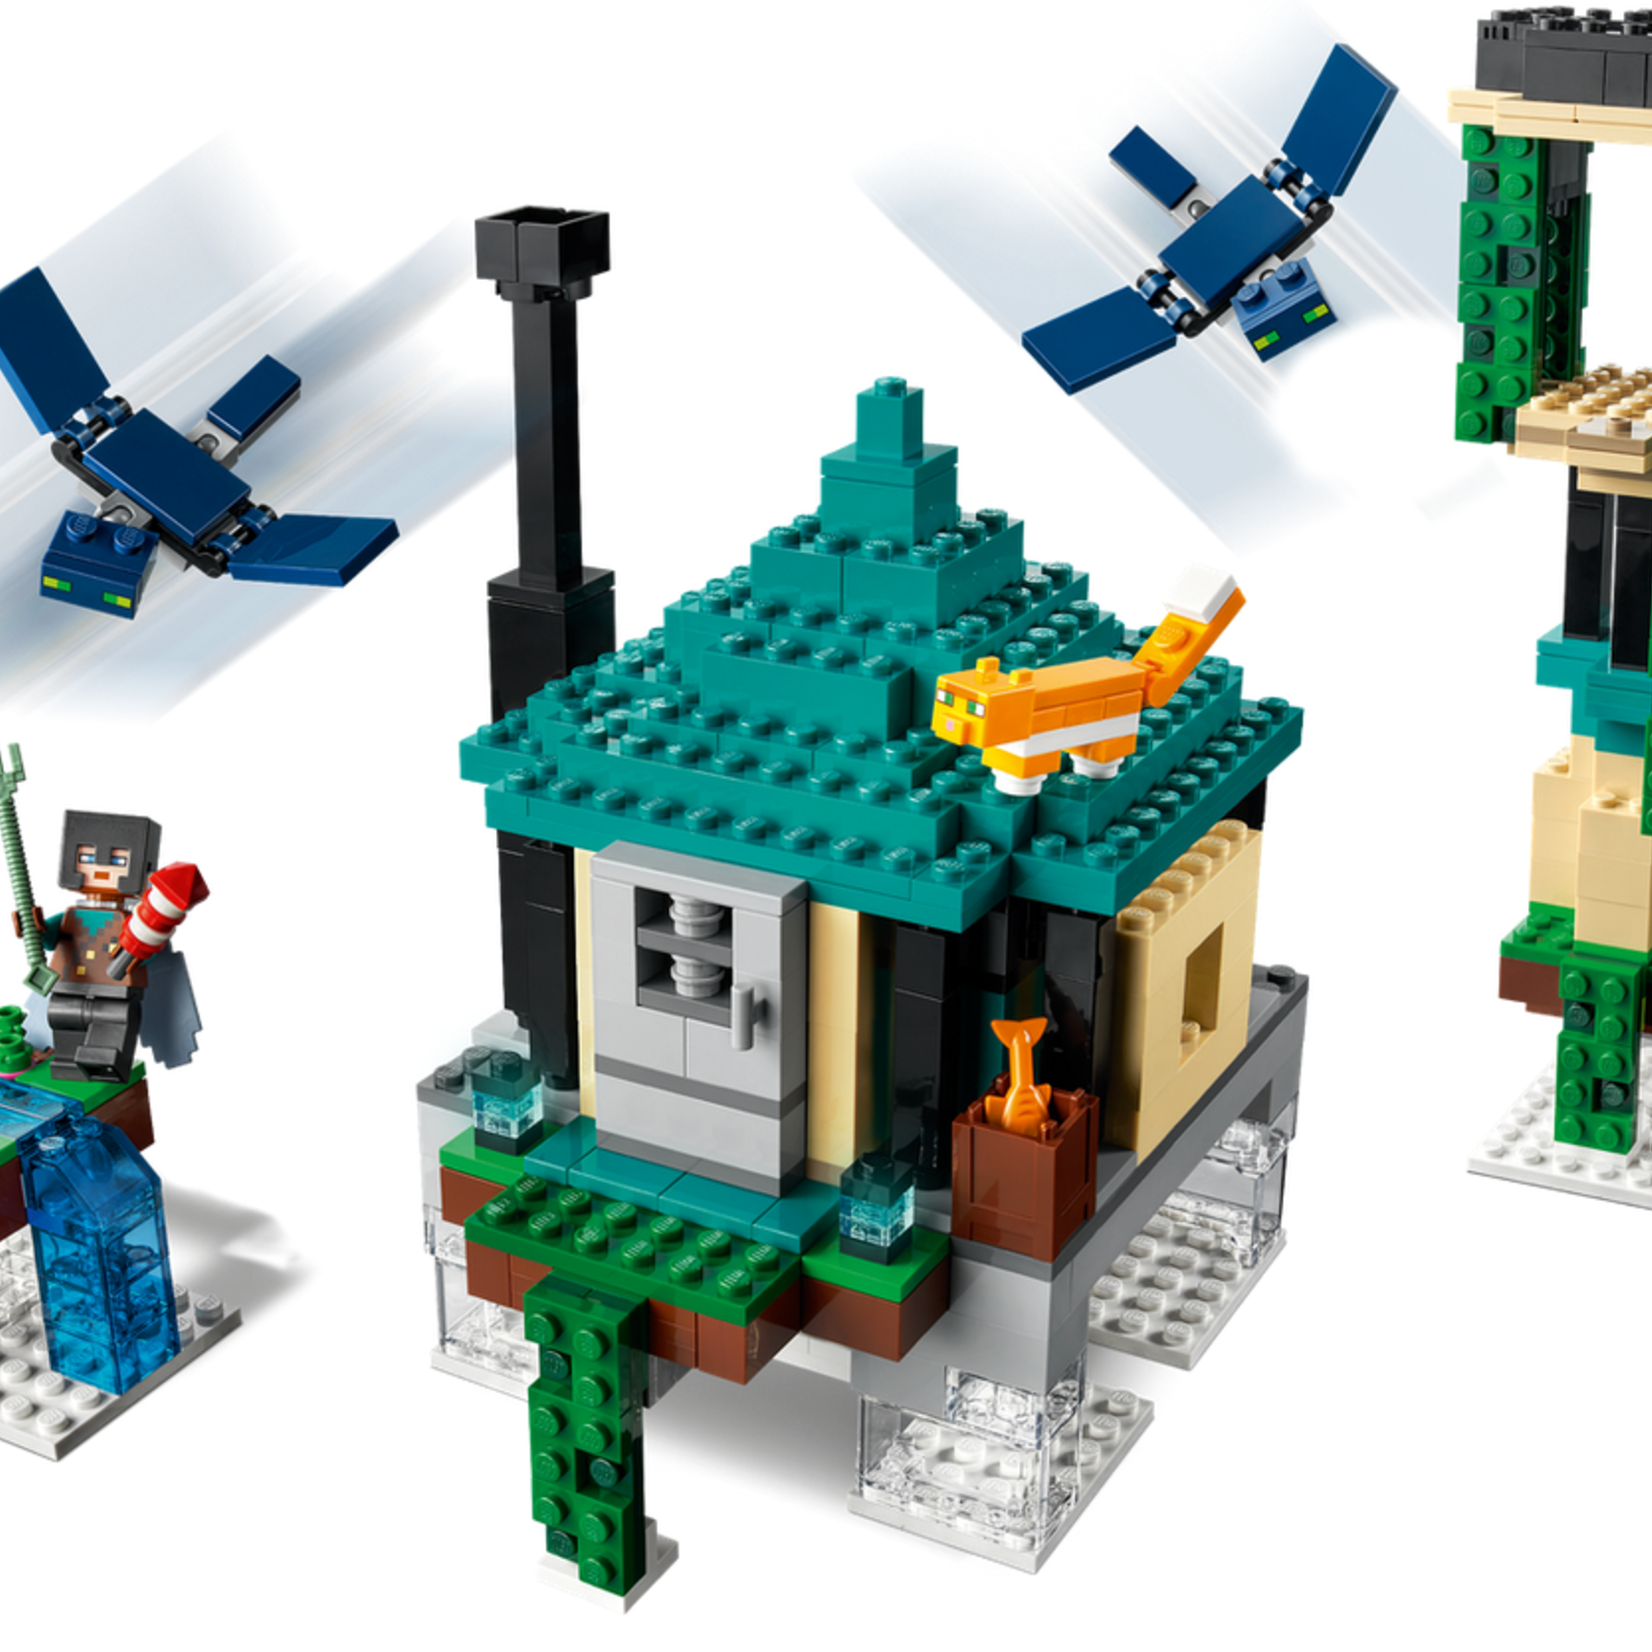 Lego Lego 21173 Minecraft - La tour du ciel